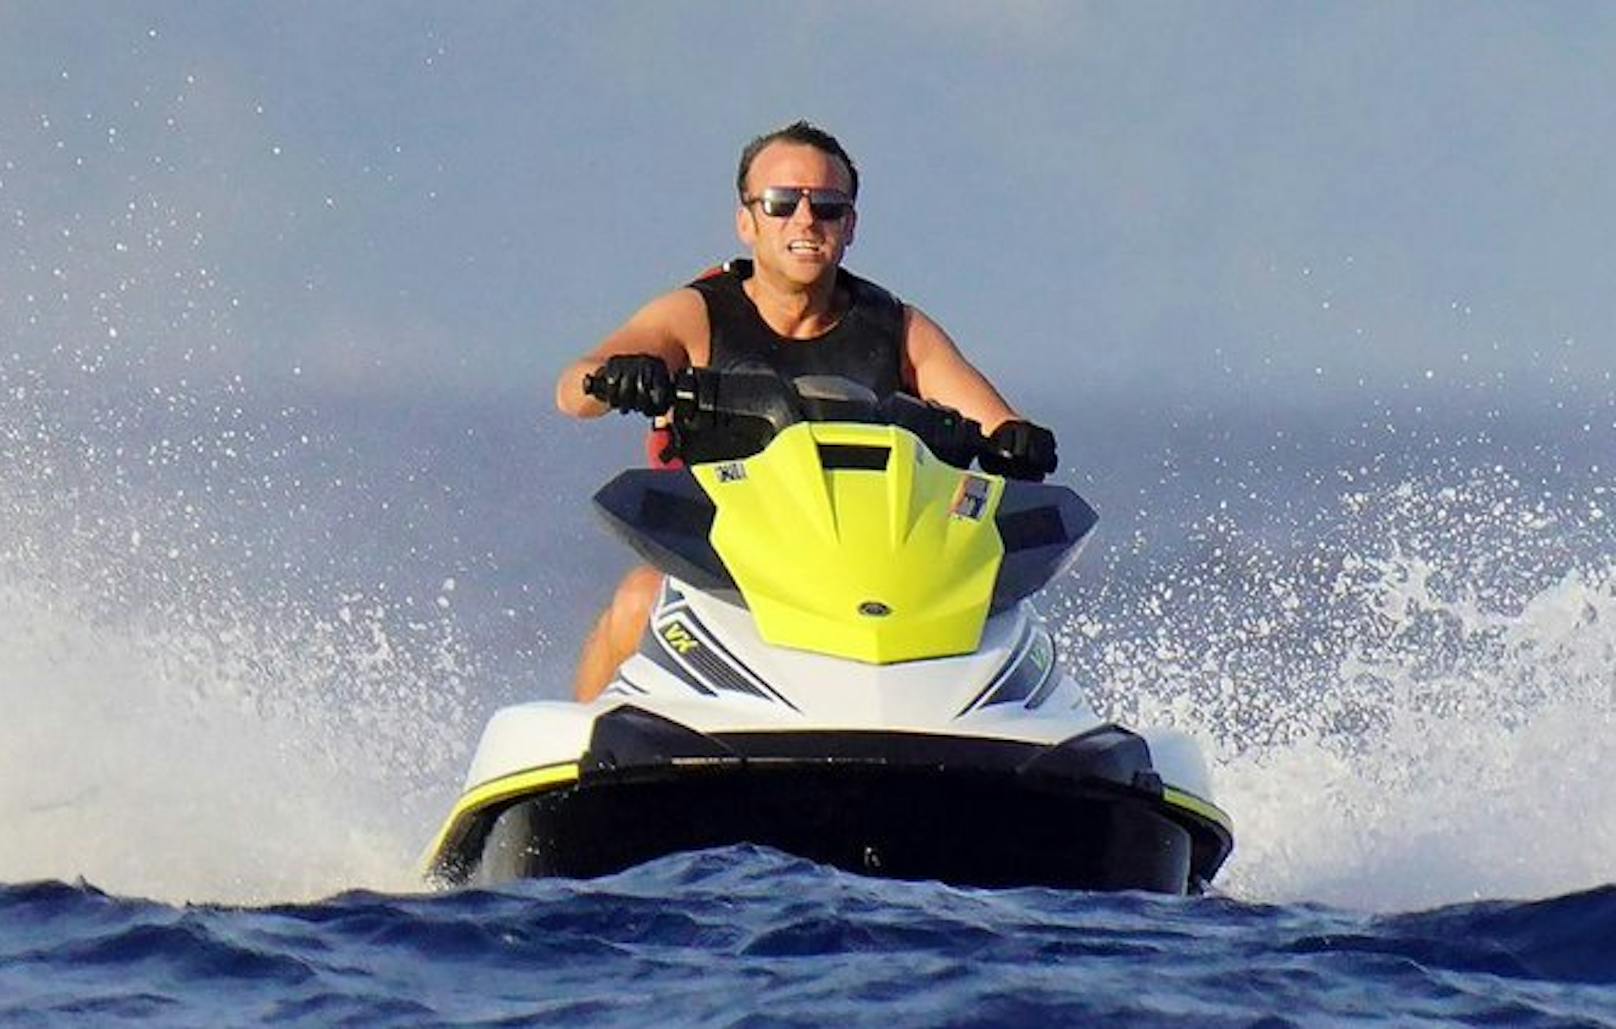 Der "Klima-Rambo" Macron ist wieder mal mit seinem Jet-Ski unterwegs.